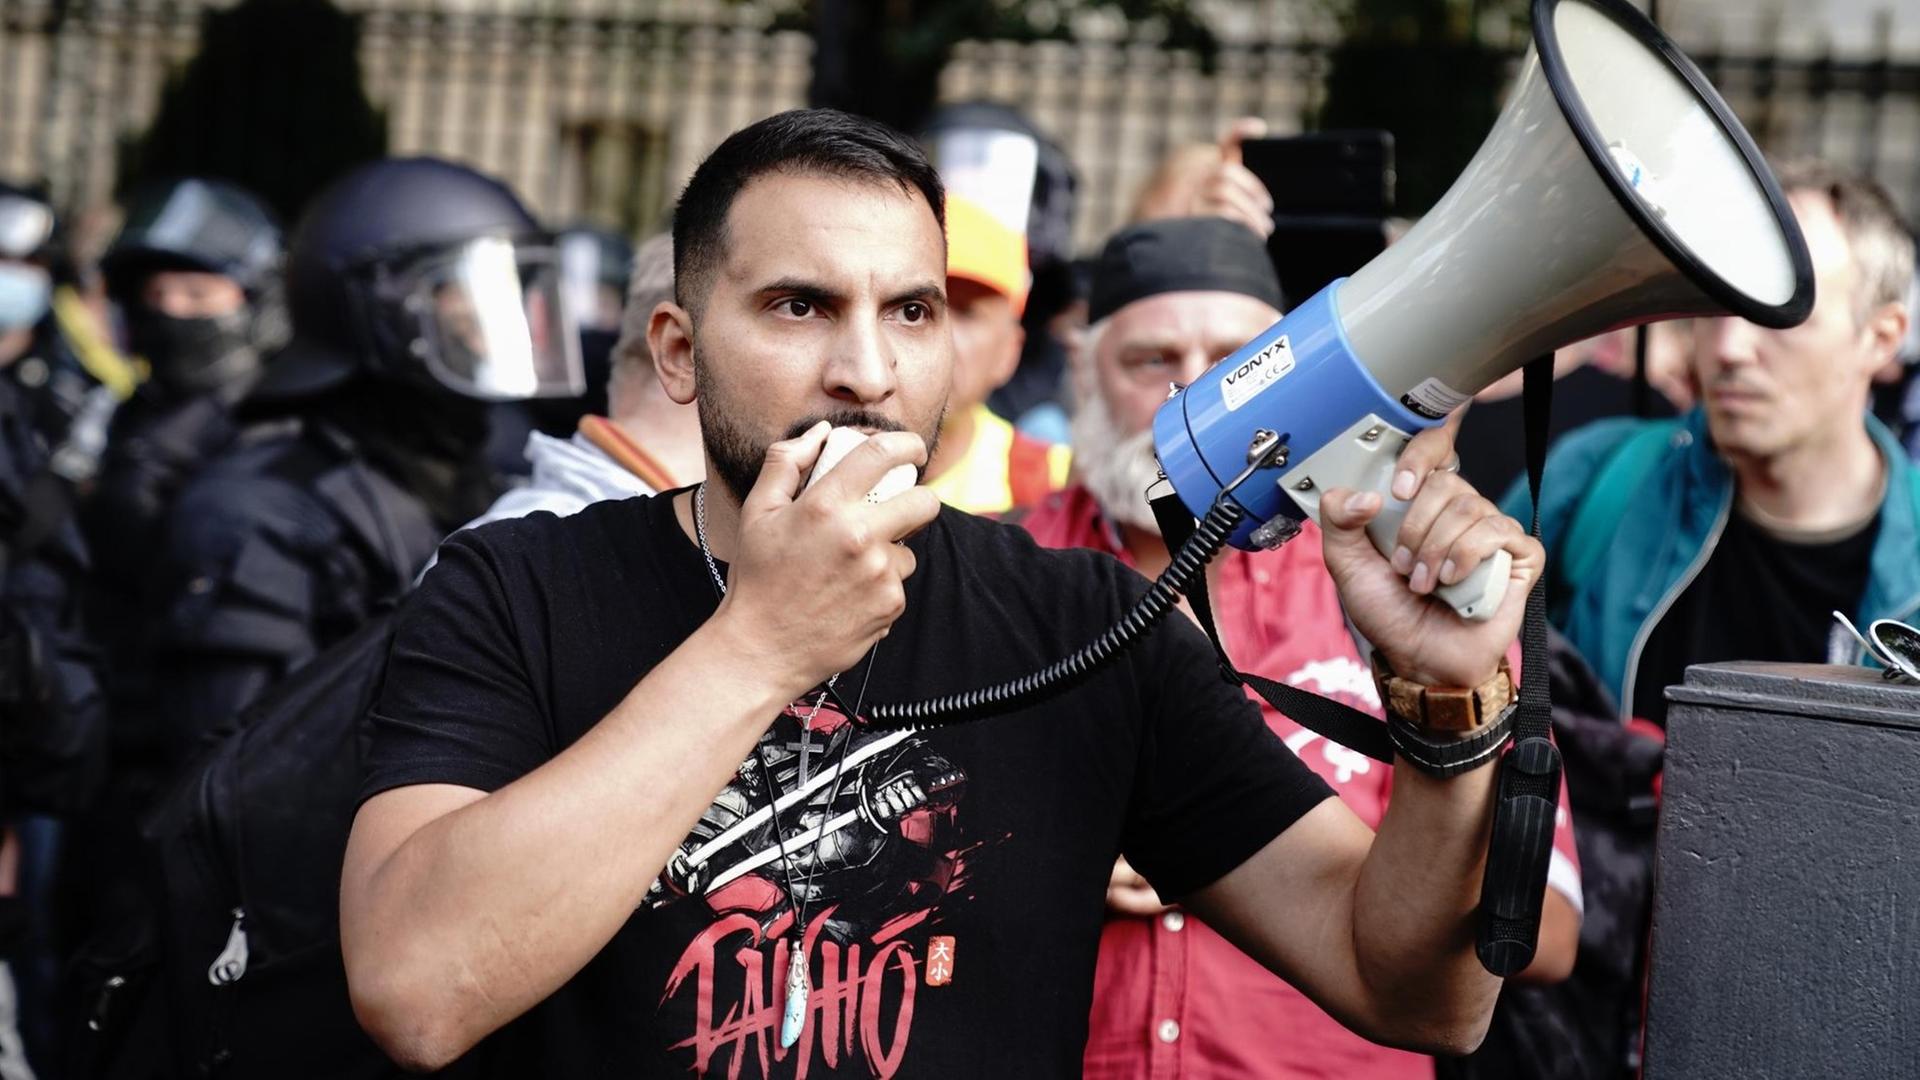 Attila Hildmann spricht vor der russischen Botschaft in Berlin bei einer Demonstration in ein Megaphon